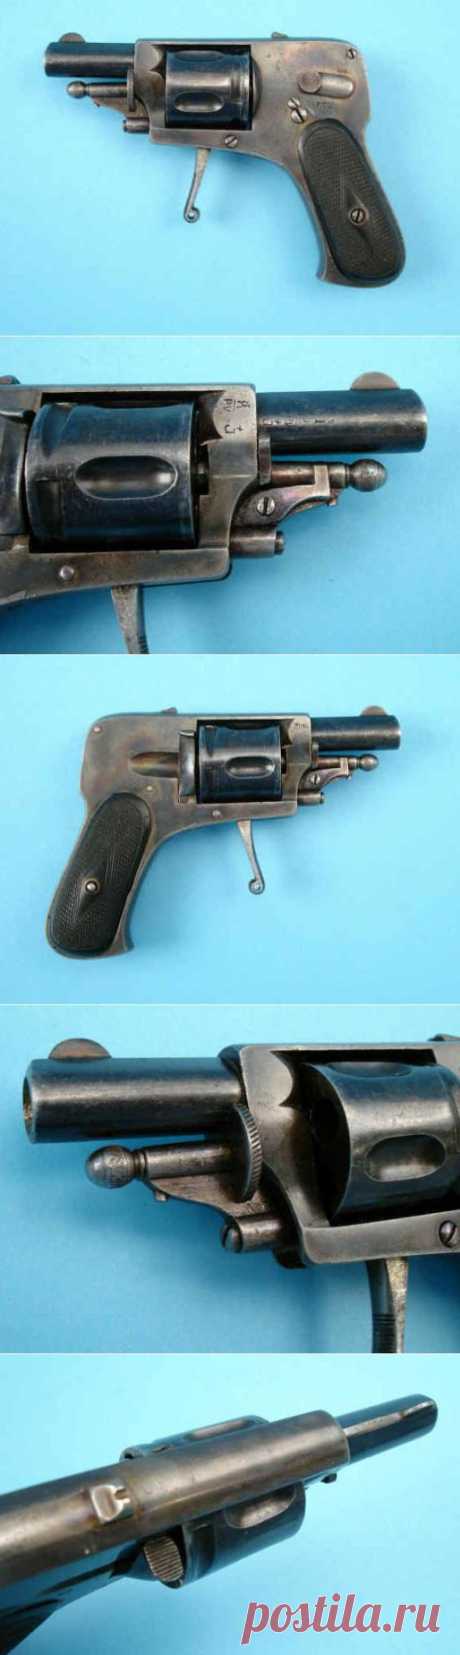 (+1) - Бельгийский револьвер Велодог «фасон Браунинг» калибра 6,35 мм | Энциклопедия оружия